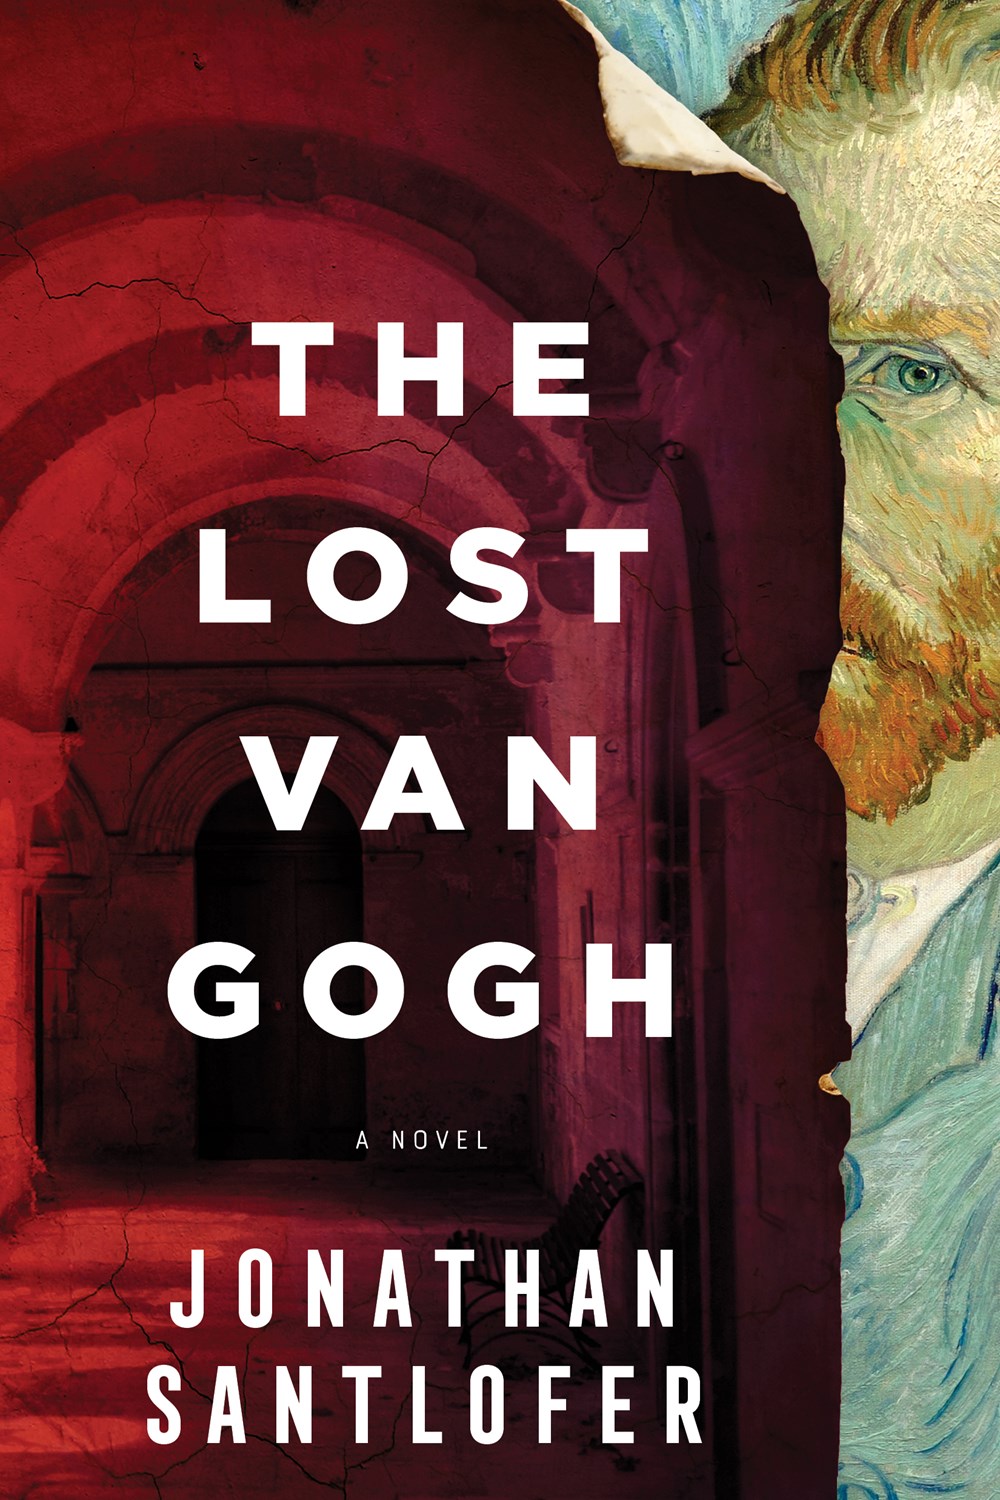 The Lost van Gogh